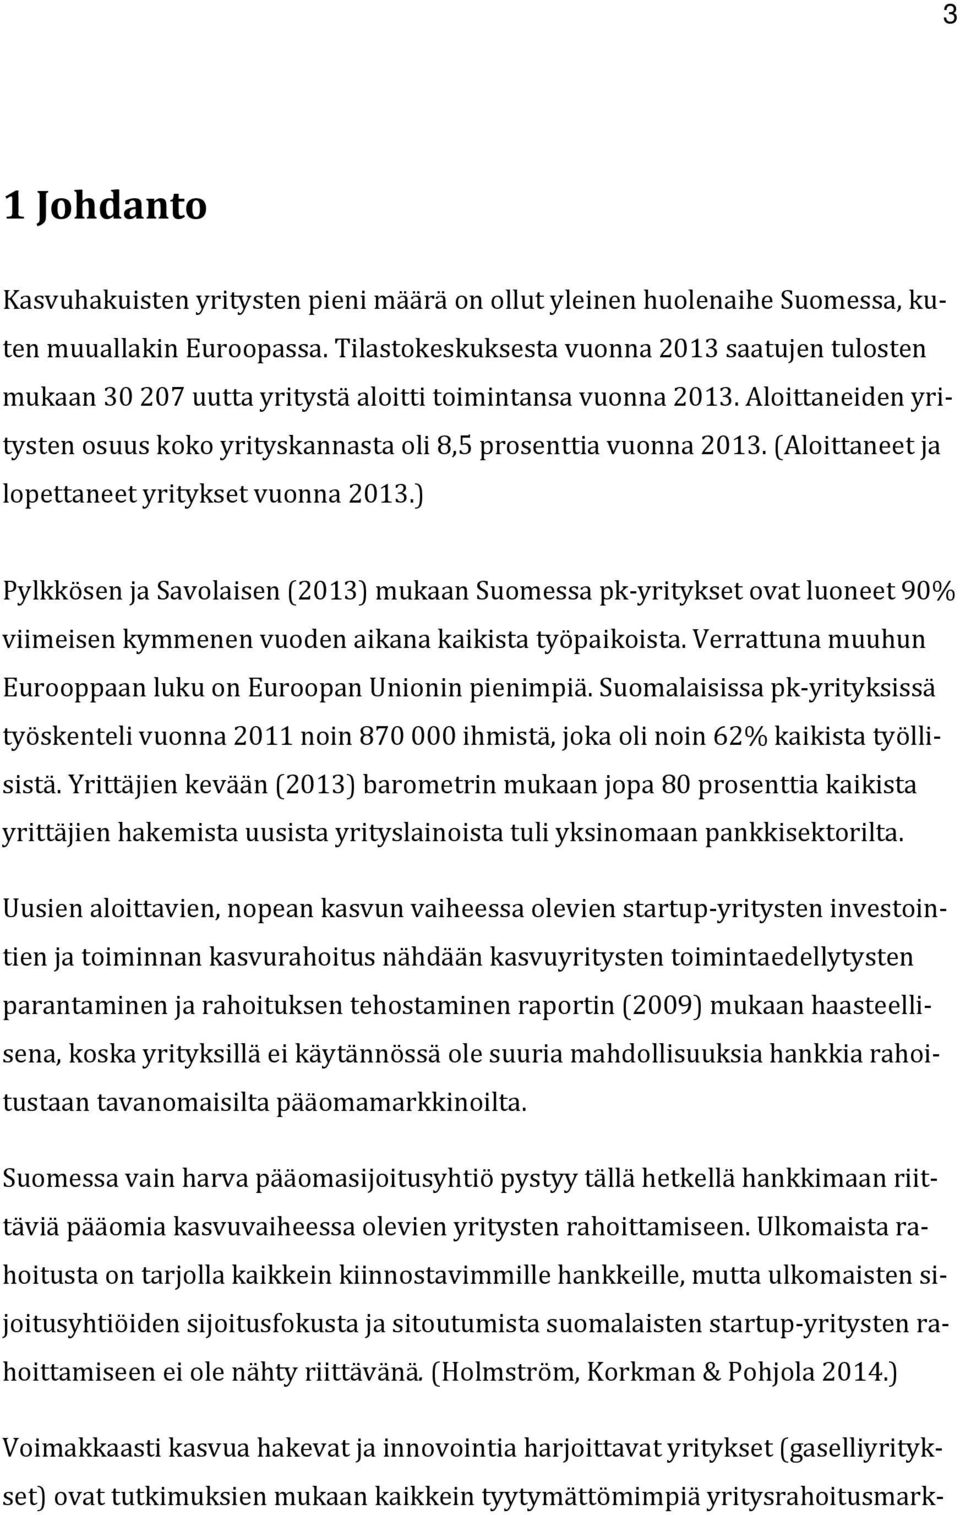 (Aloittaneet ja lopettaneet yritykset vuonna 2013.) Pylkkösen ja Savolaisen (2013) mukaan Suomessa pk-yritykset ovat luoneet 90% viimeisen kymmenen vuoden aikana kaikista työpaikoista.